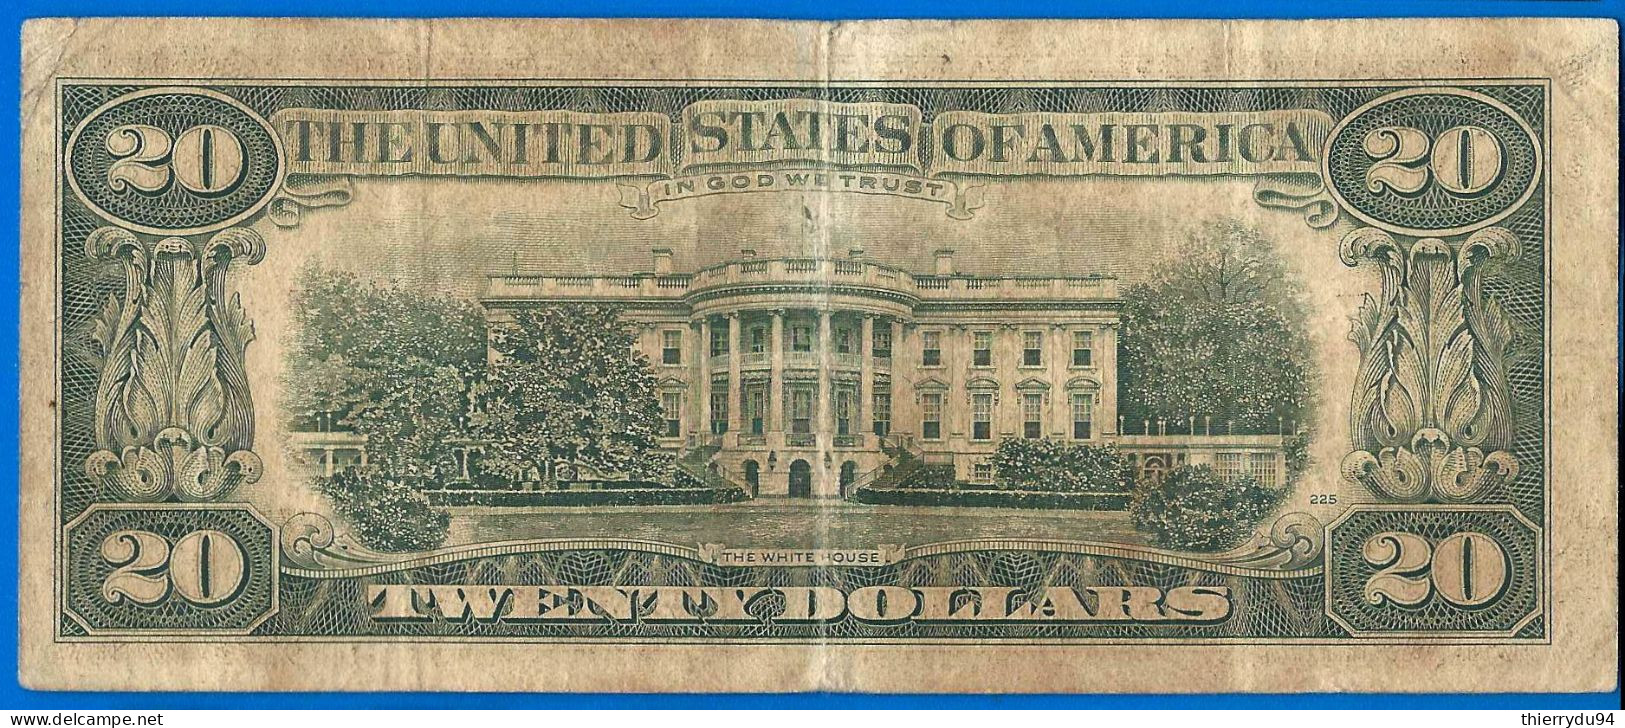 USA 20 Dollars 1981 Mint Chicago G7 Suffixe C Etats Unis United States Dollar US Crypto Bitcoin OK - United States Notes (1862-1923)